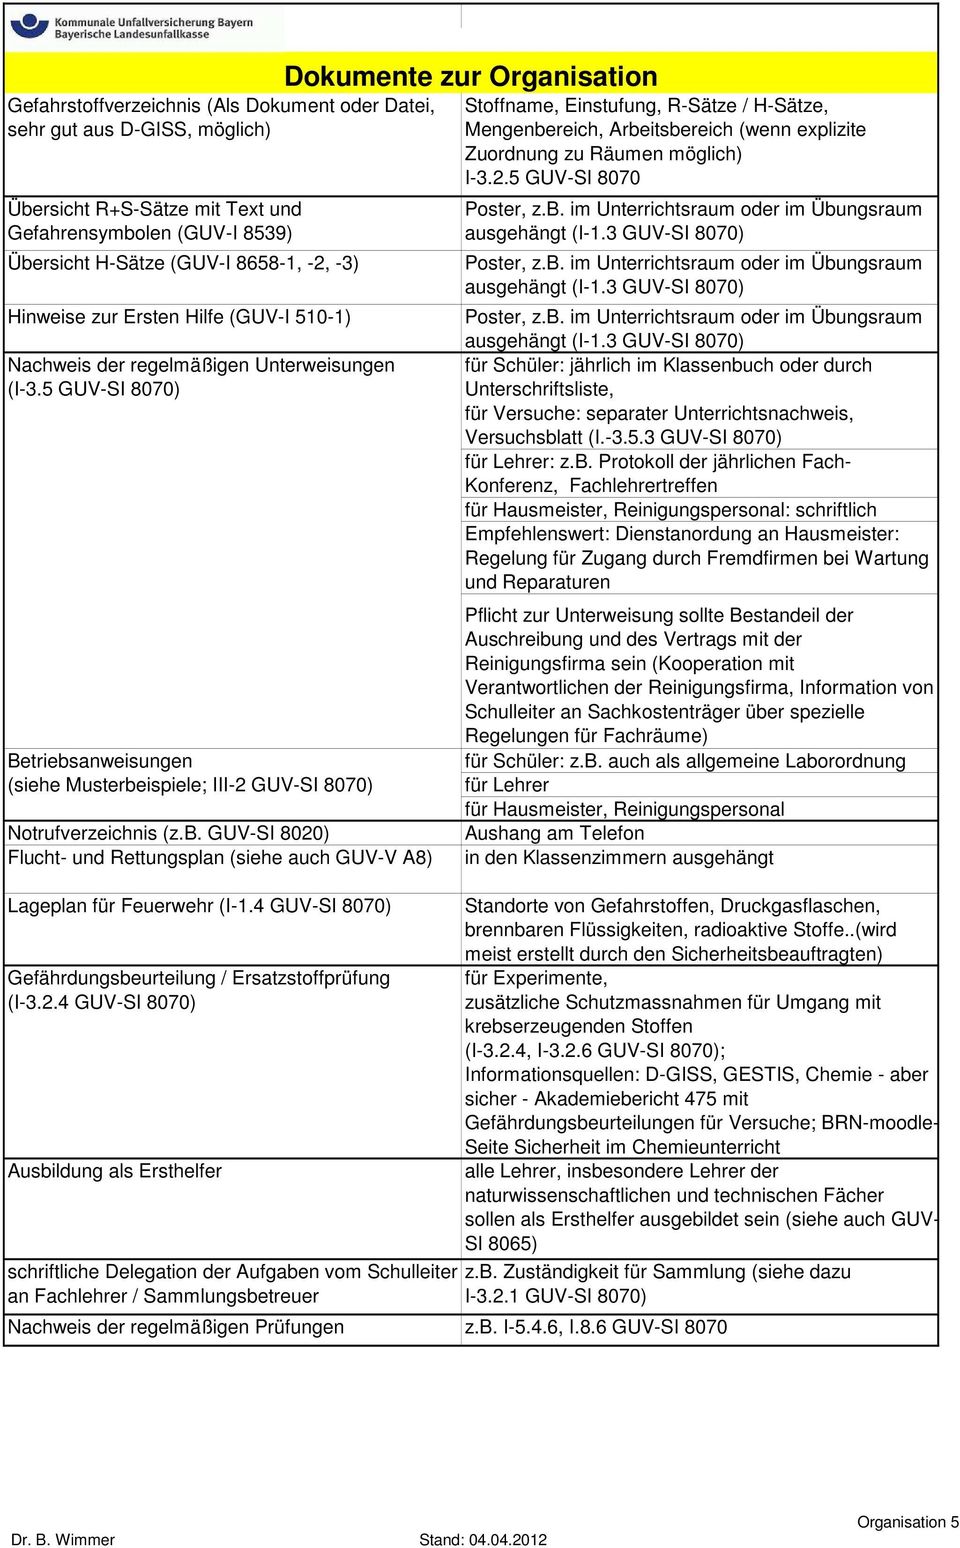 4 GUV-SI 8070) Gefährdungsbeurteilung / Ersatzstoffprüfung (I-3.2.